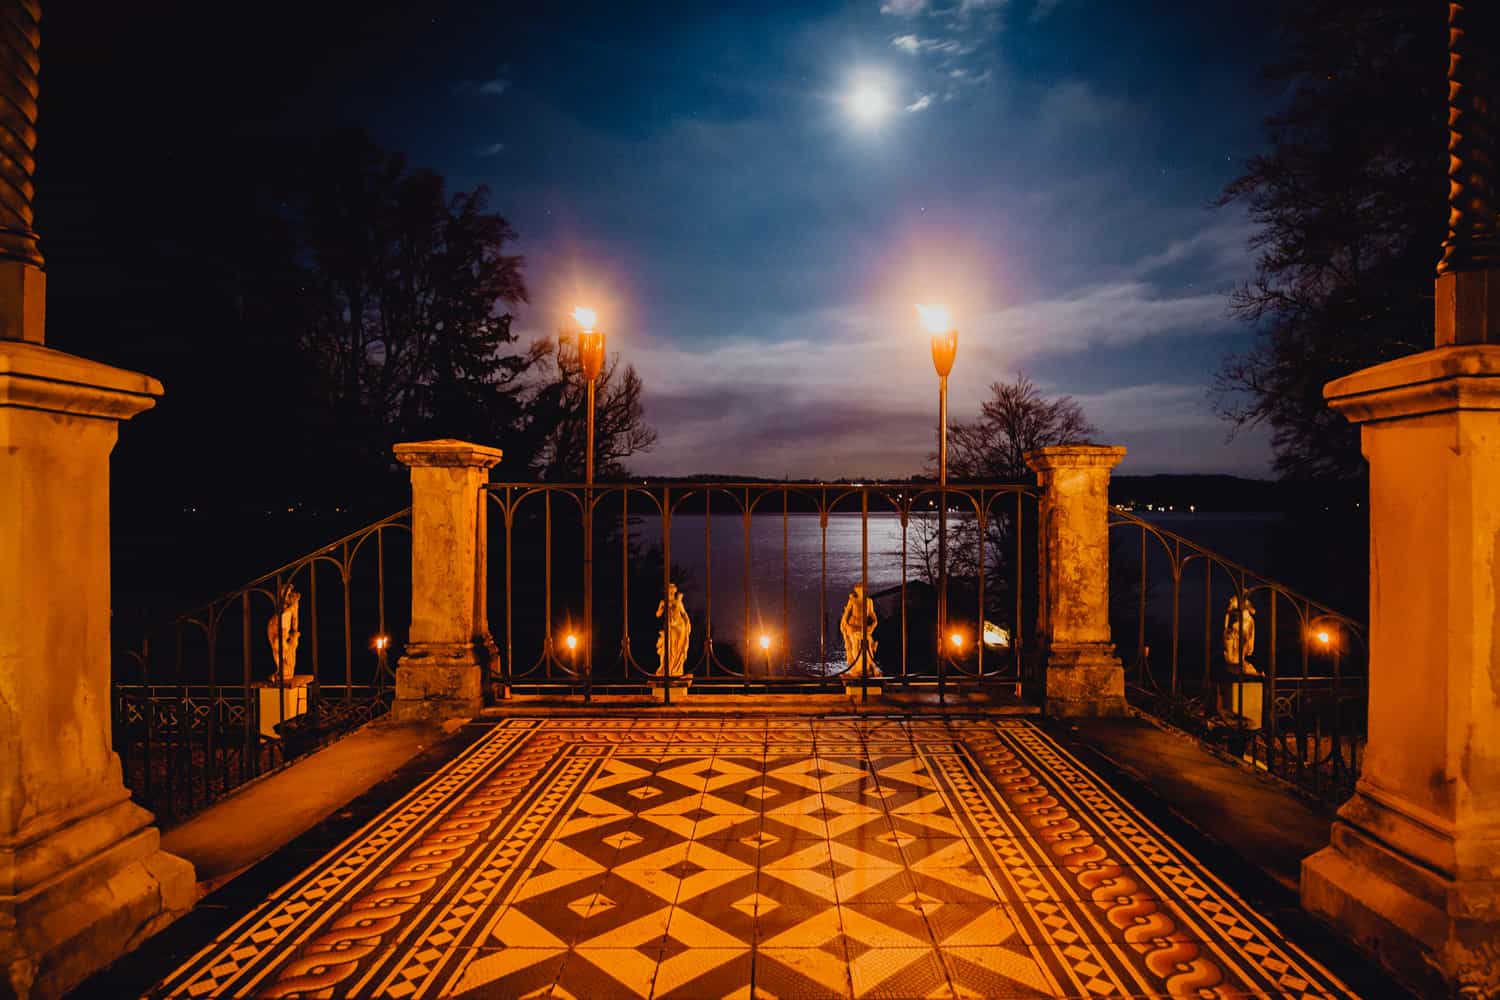 Nachtaufnahme der Terrasse La Villa am Starnberger See. Man sieht Fackeln, die den Boden orange beleuchten und im Himmel den Mond, der den Starnberger See blau beleuchtet